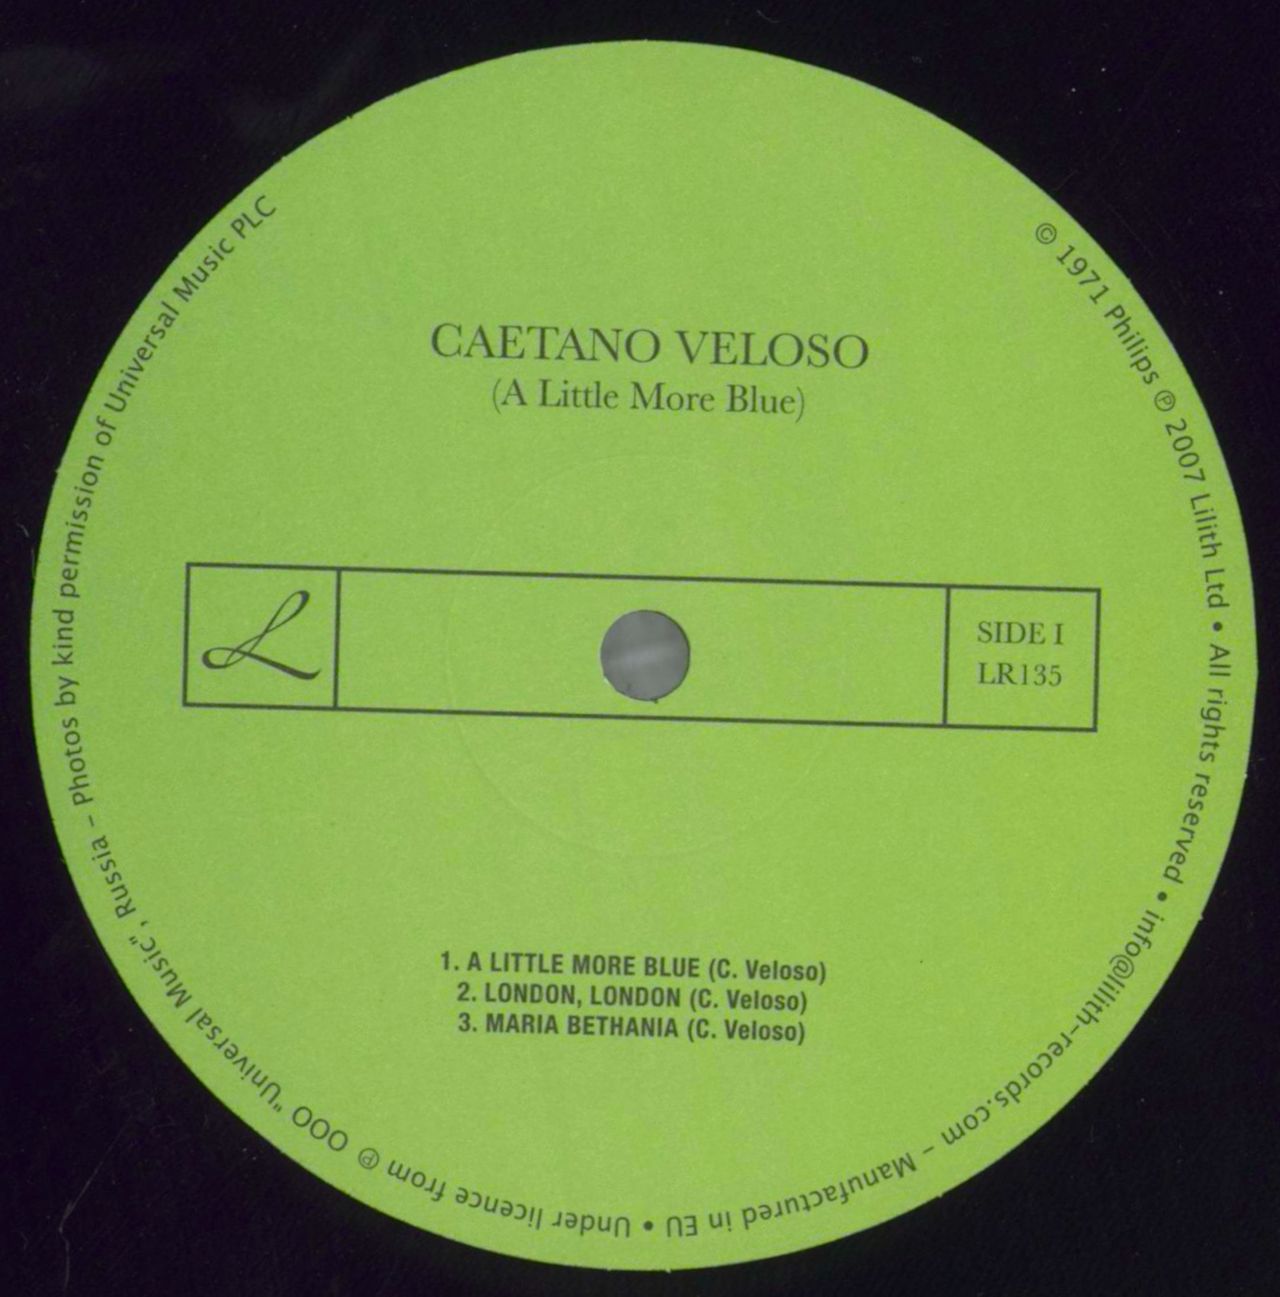 オリジナル盤 再生良好！Gal e Caetano veloso domingo LP レコード